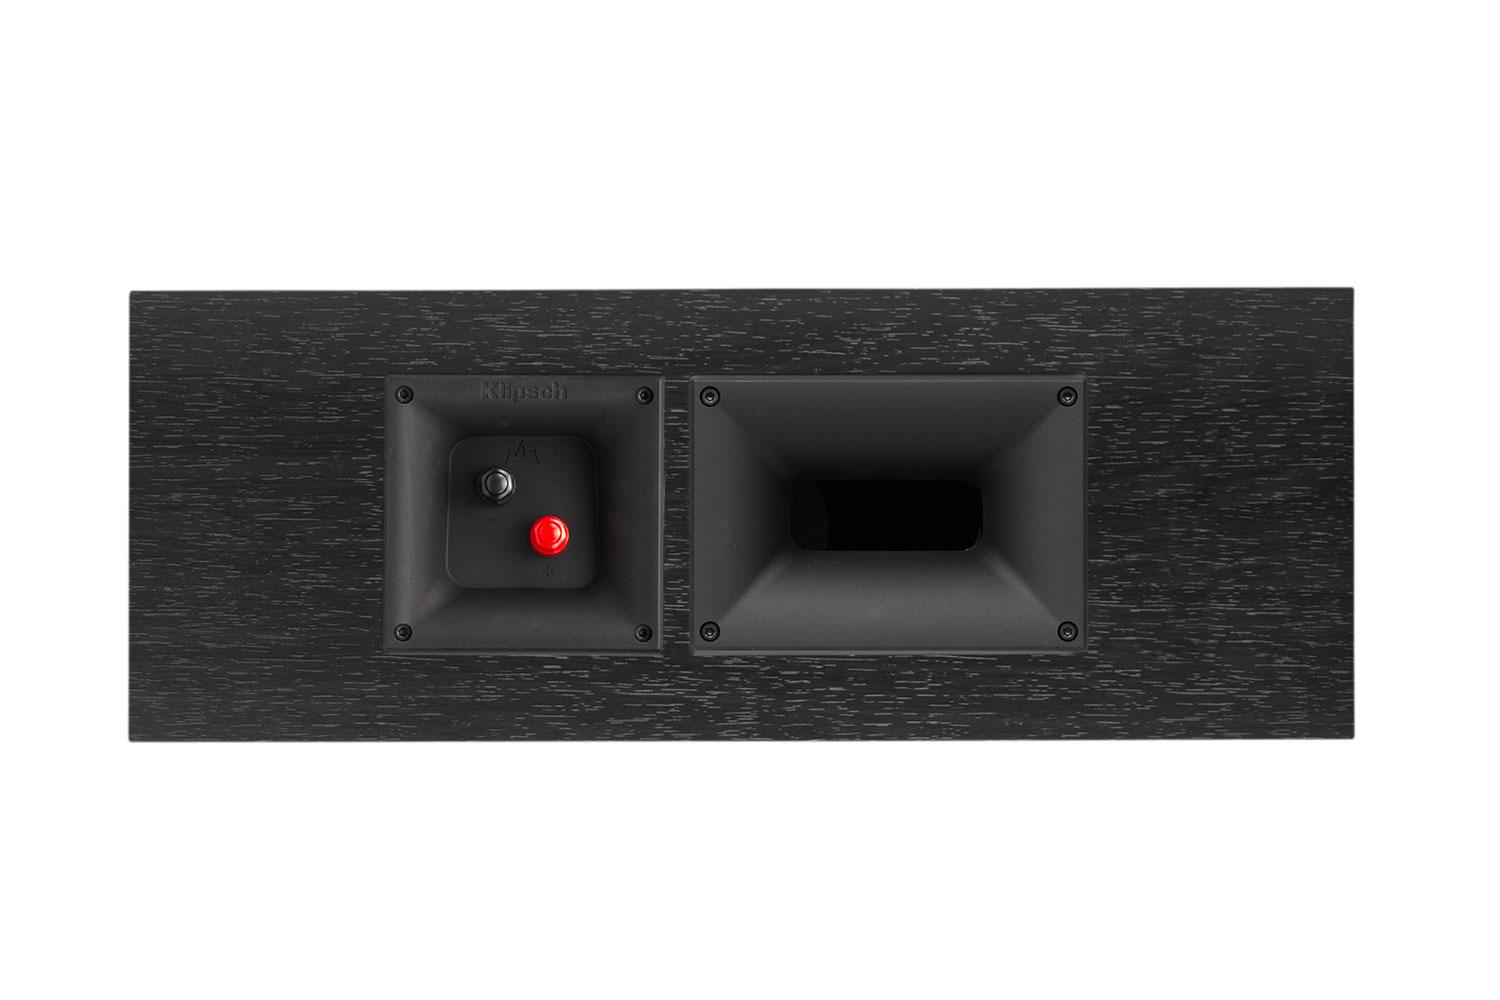 klipsch reference premier speaker system debuts at ces 2015 250c back